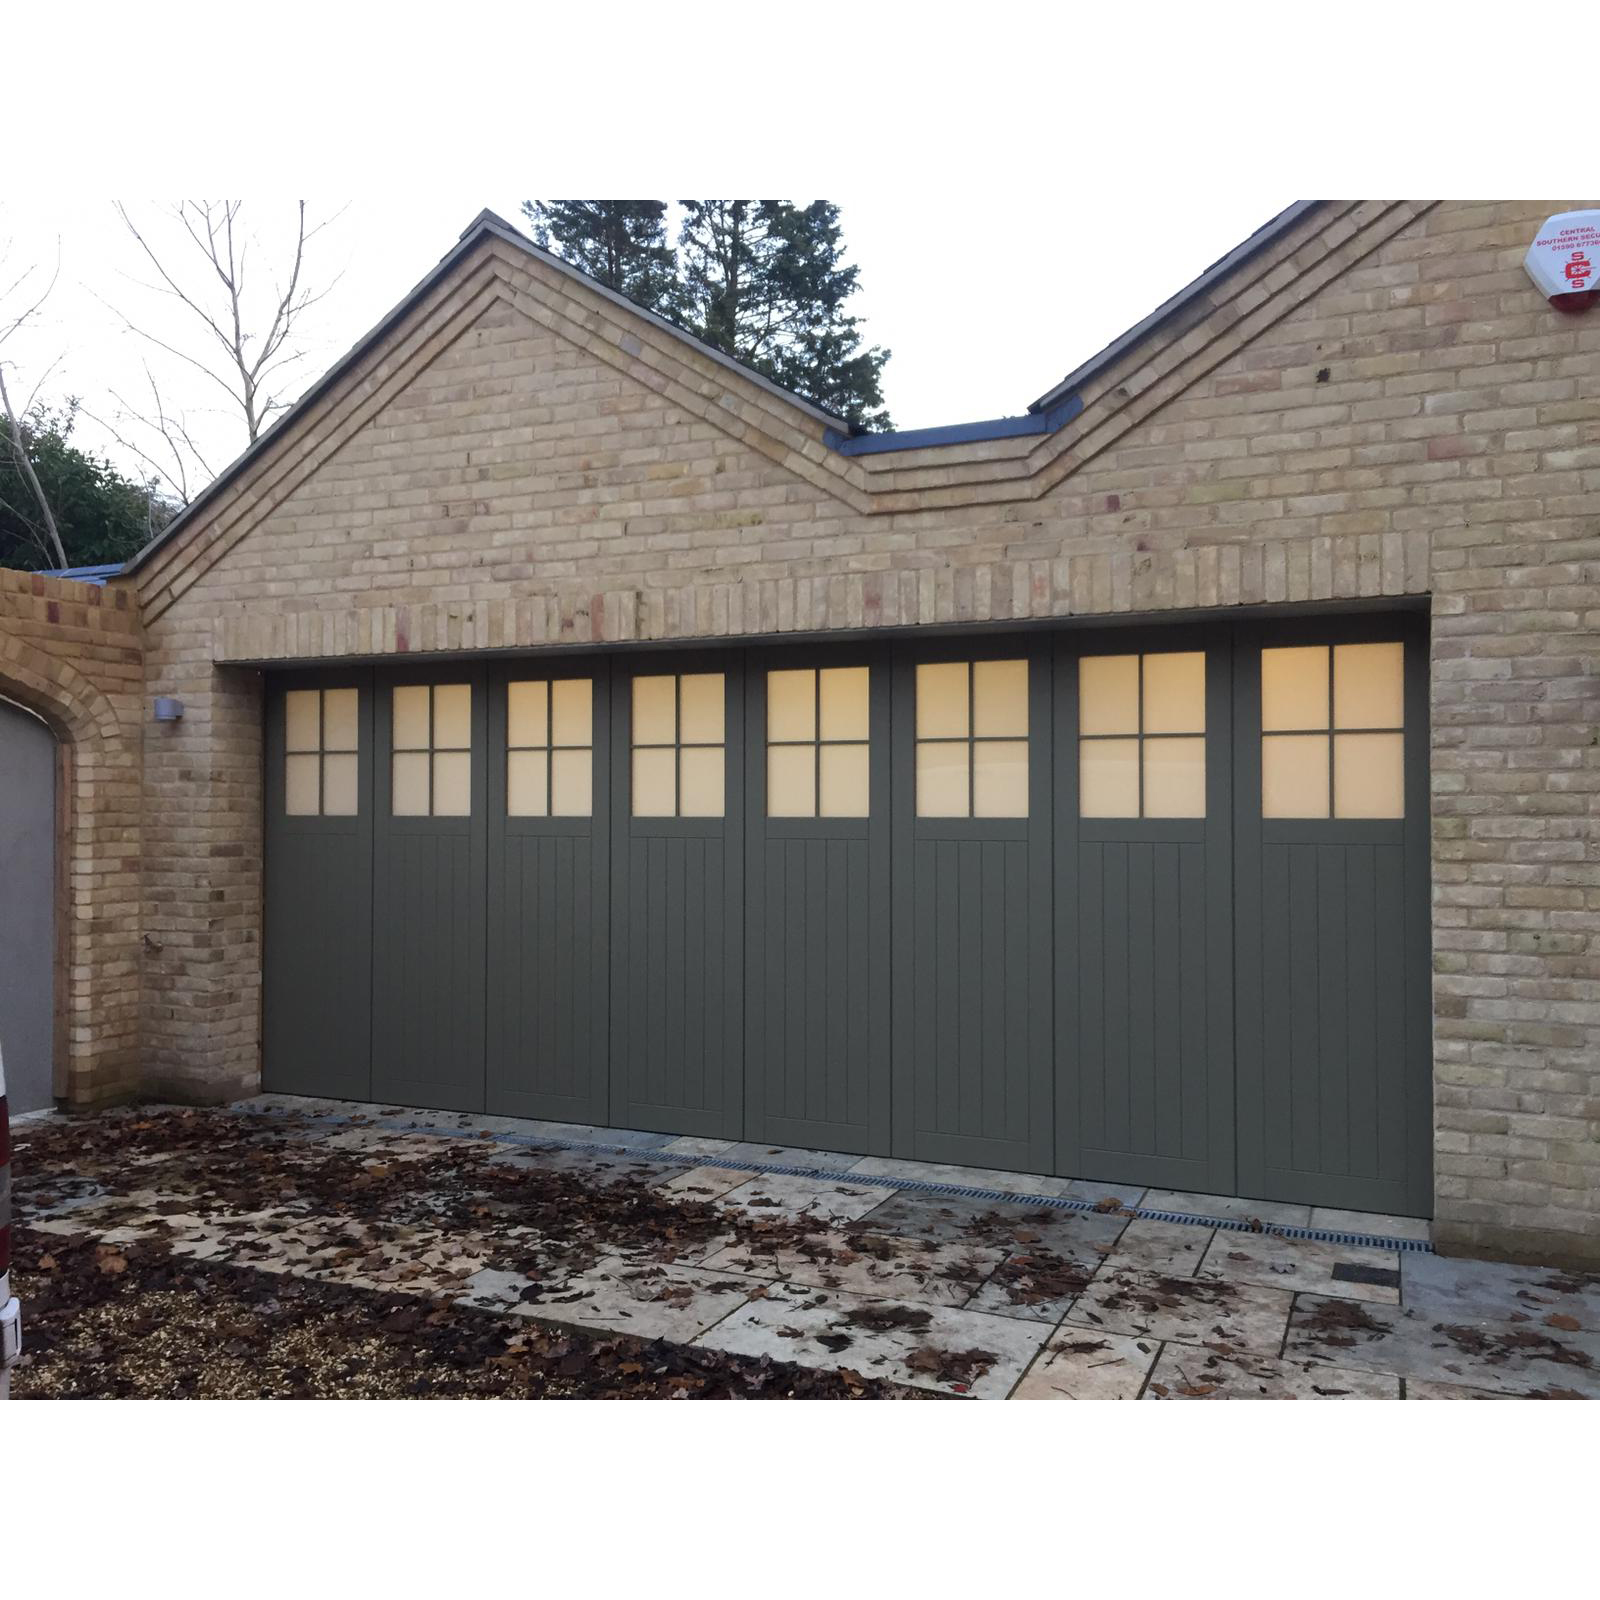 What is the garage door for?